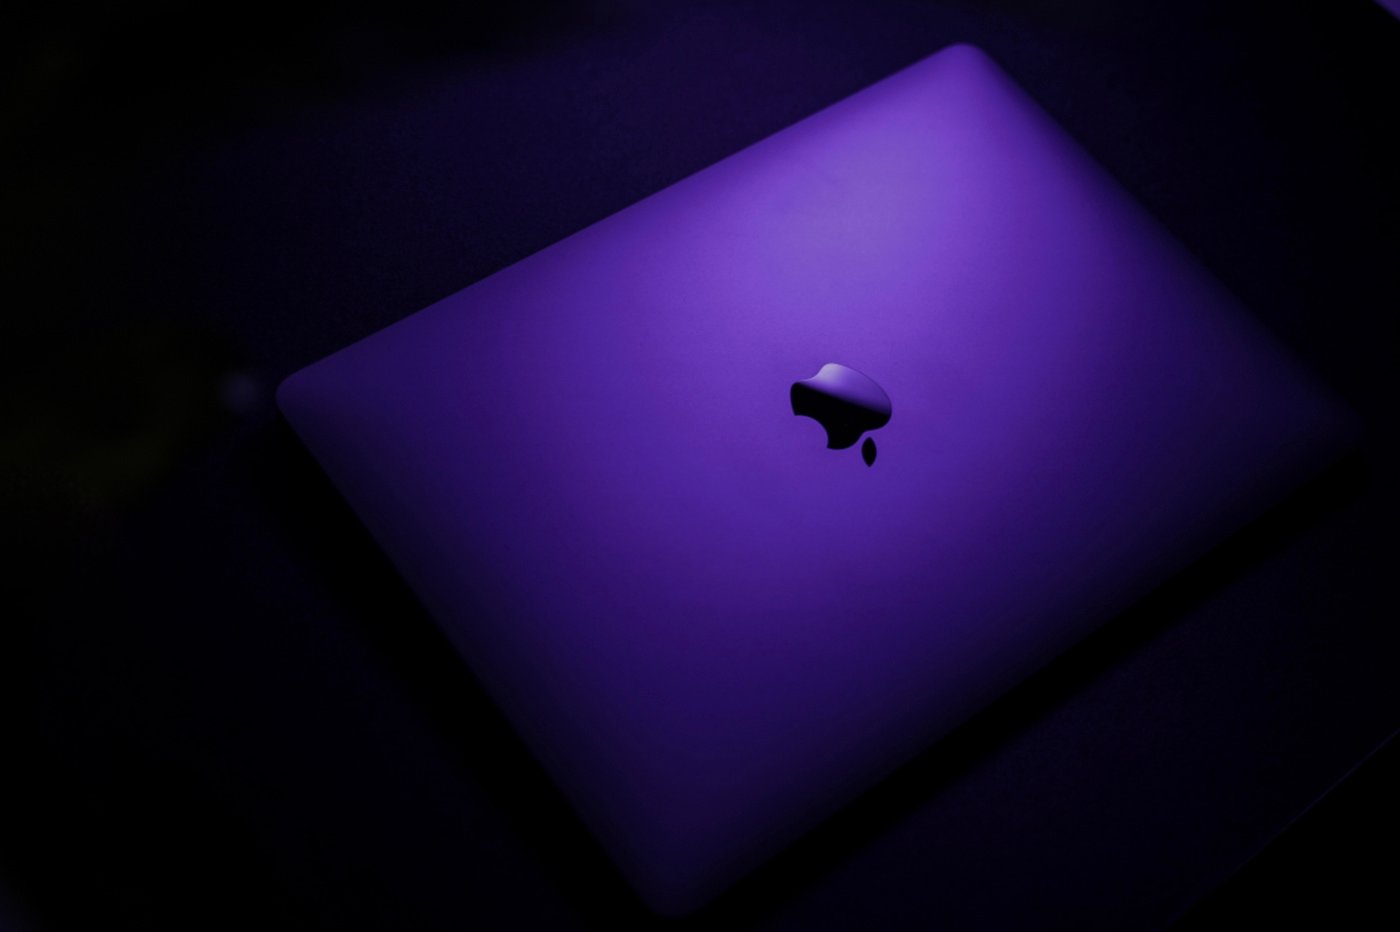 MacBook Air : remise sur le célèbre PC portable Apple chez